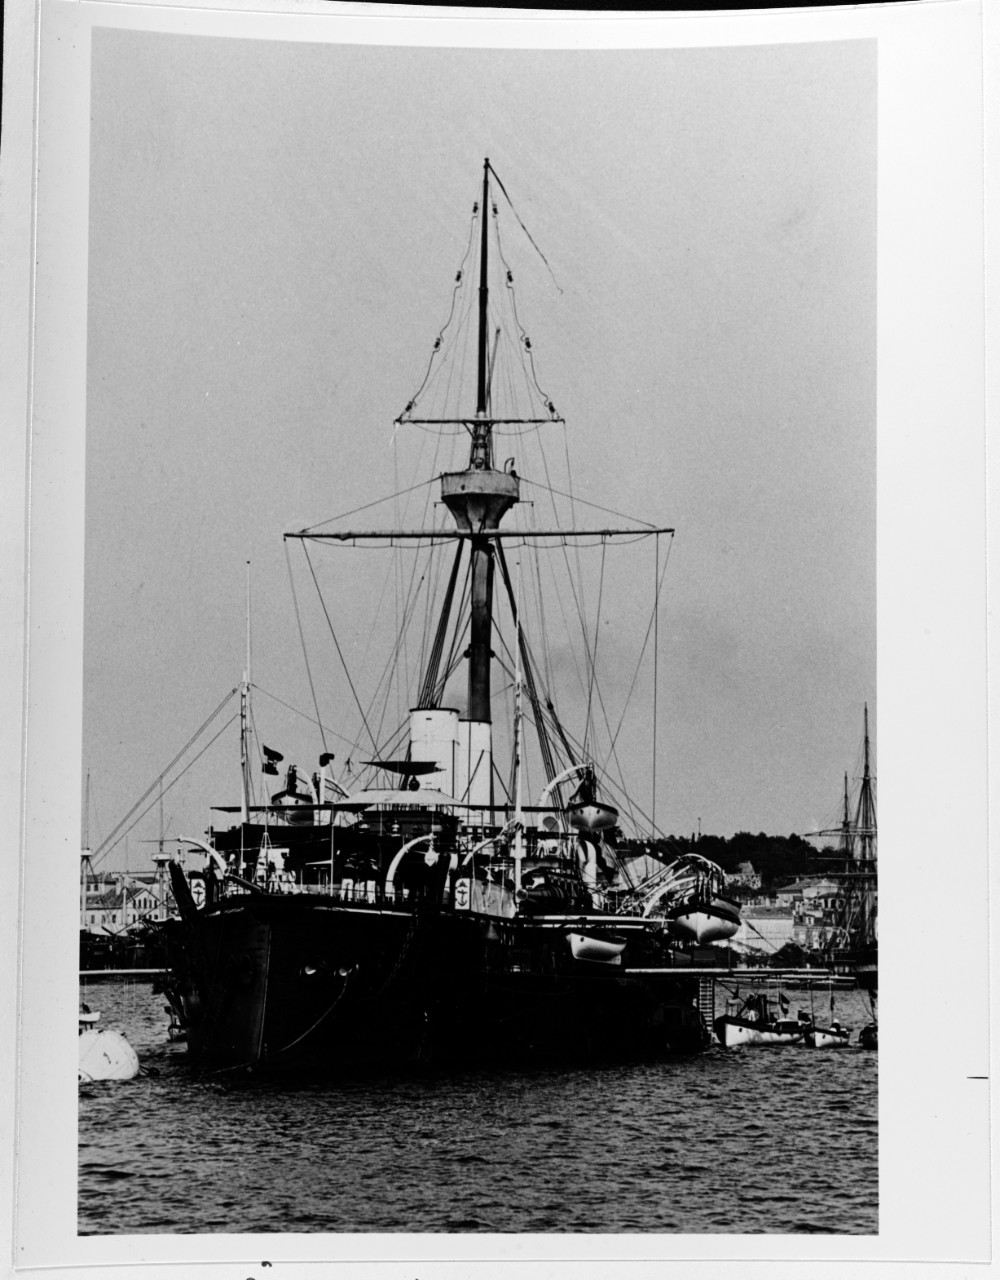 KRONPRINZ ERZHERZOG RUDOLF (Austrian Battleship, 1887-1922)